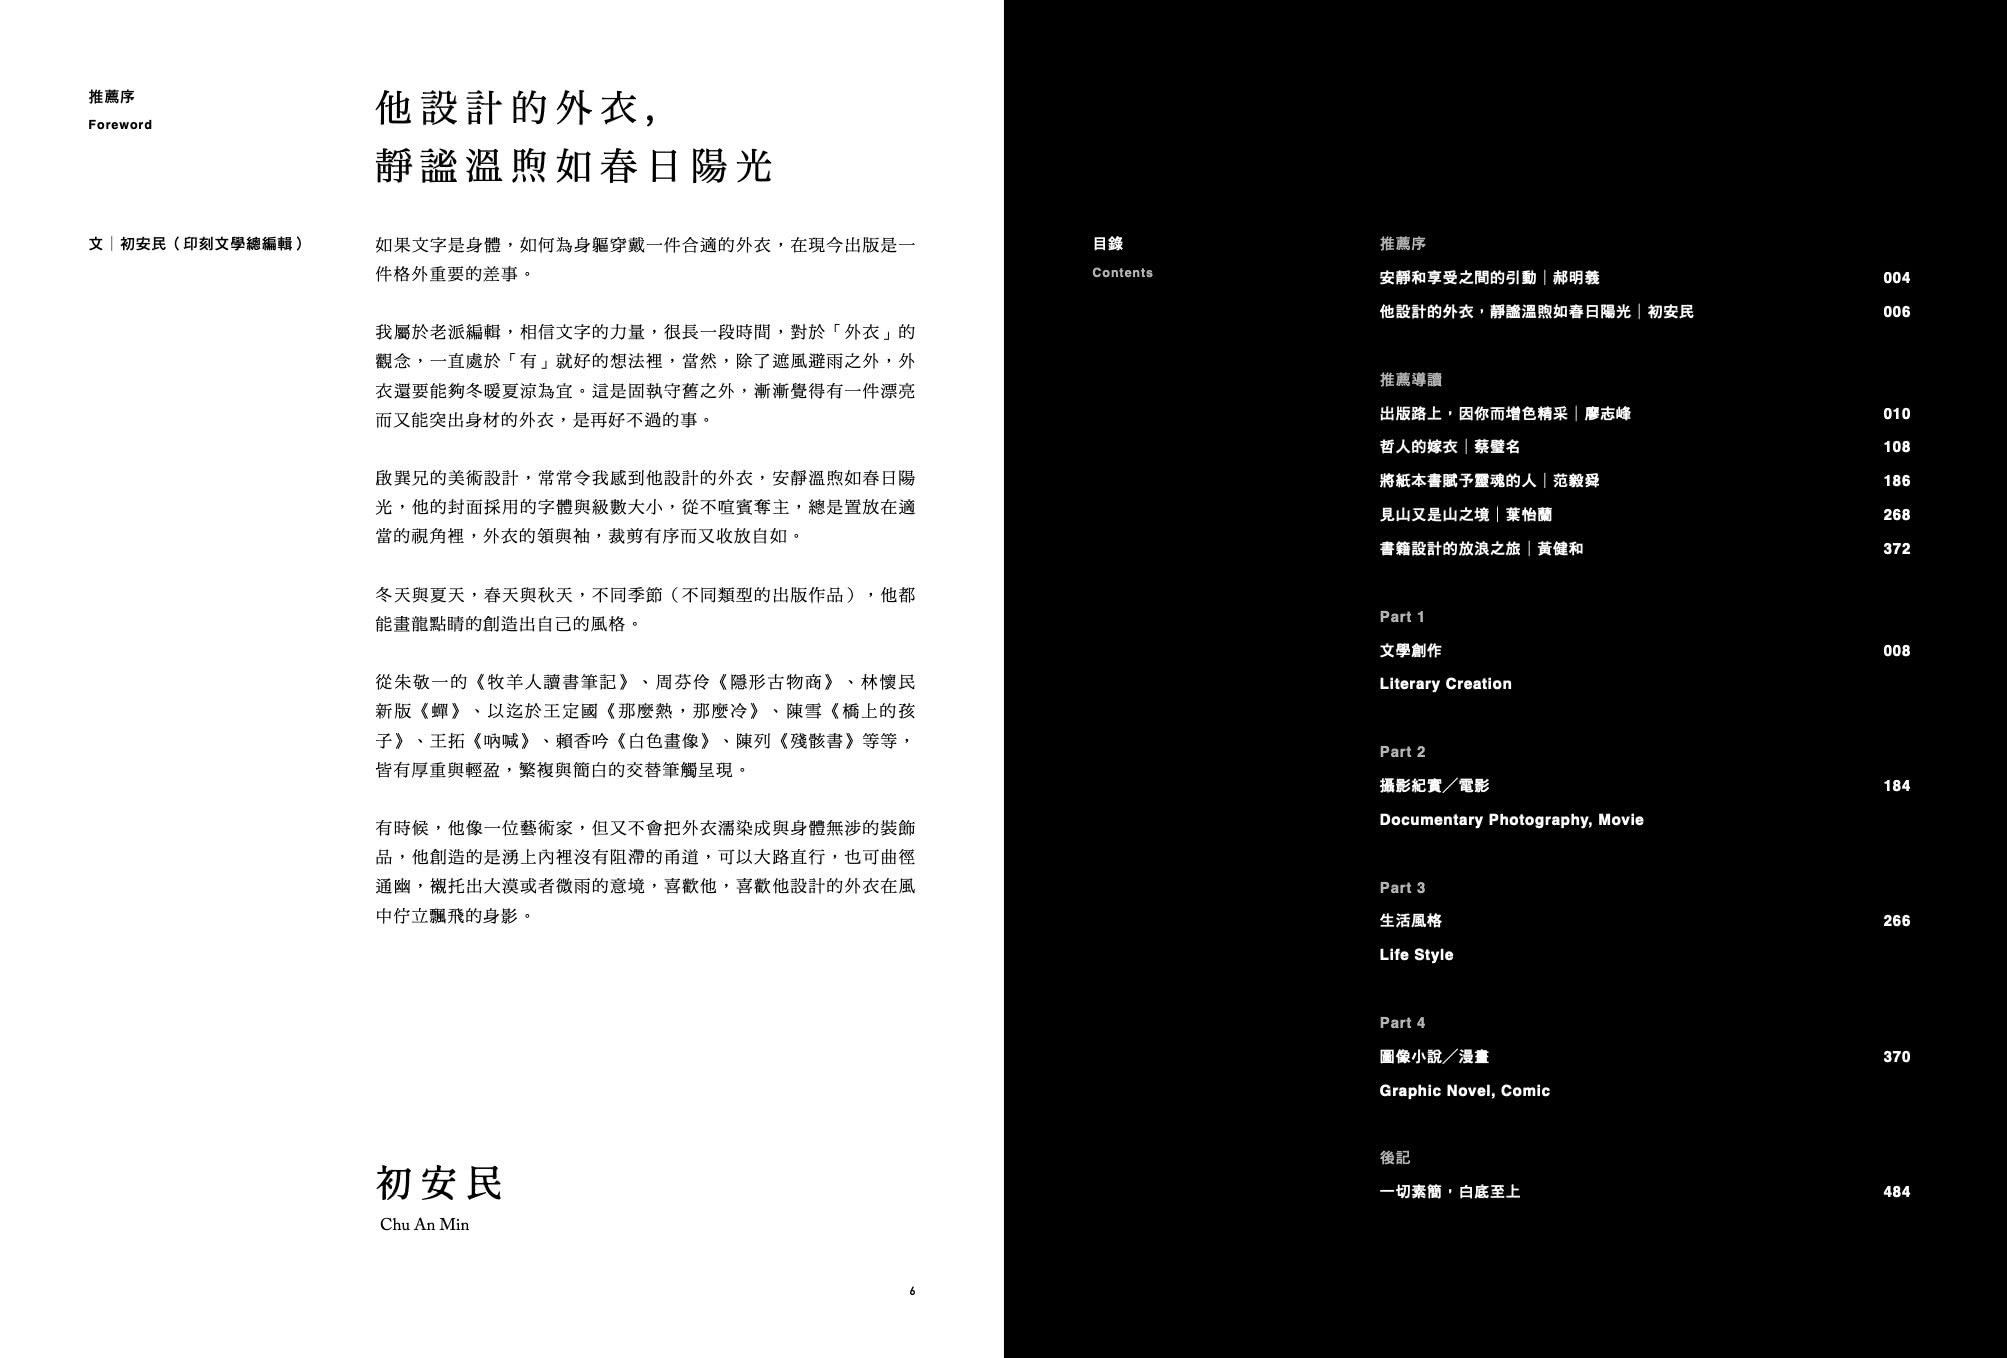 素直設計Book Design――楊啟巽作品集1996-2022：Yang Chi-Shun Collection